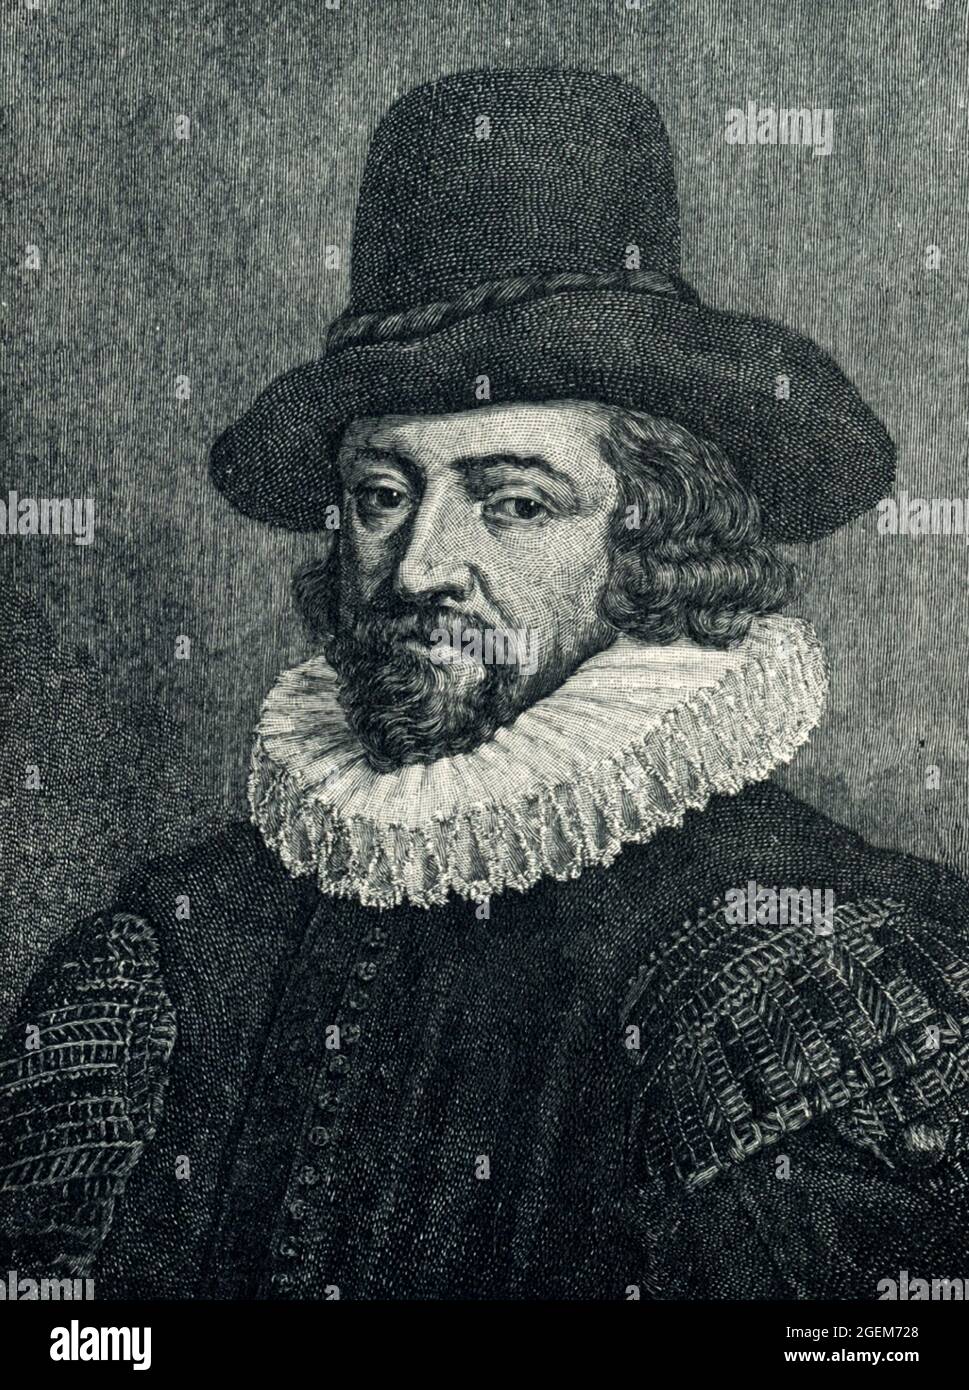 Francis Bacon (fallecido en 1626), primer vizconde de San Alban, también conocido como Lord Verulam, fue un filósofo y estadista inglés que sirvió como Fiscal General y como Lord Canciller de Inglaterra. Sus obras se acreditan con el desarrollo del método científico y siguieron siendo influyentes a través de la revolución científica. Foto de stock